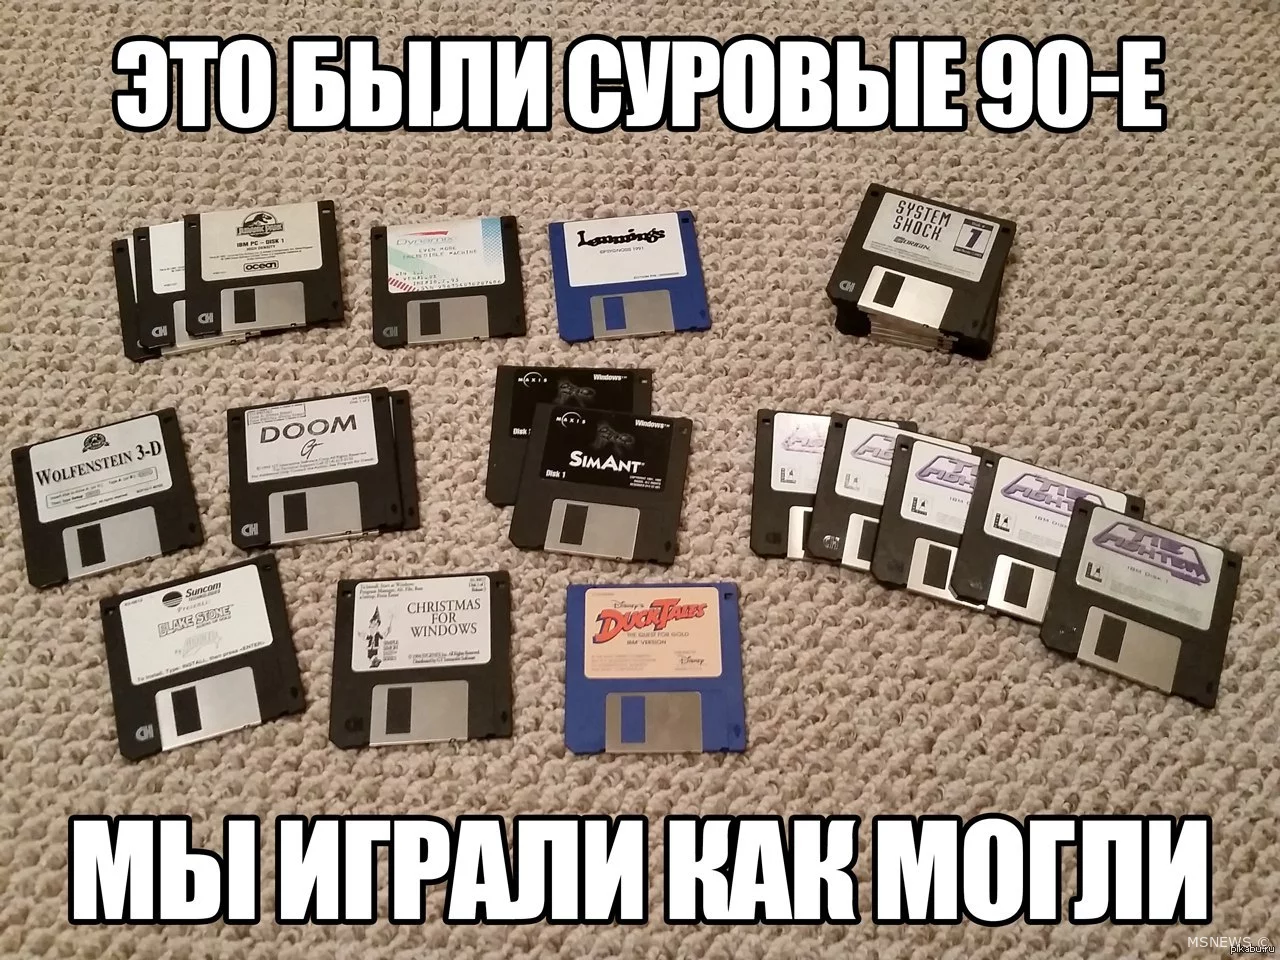 Российские компьютерные игры 90-х годов (Часть 1)